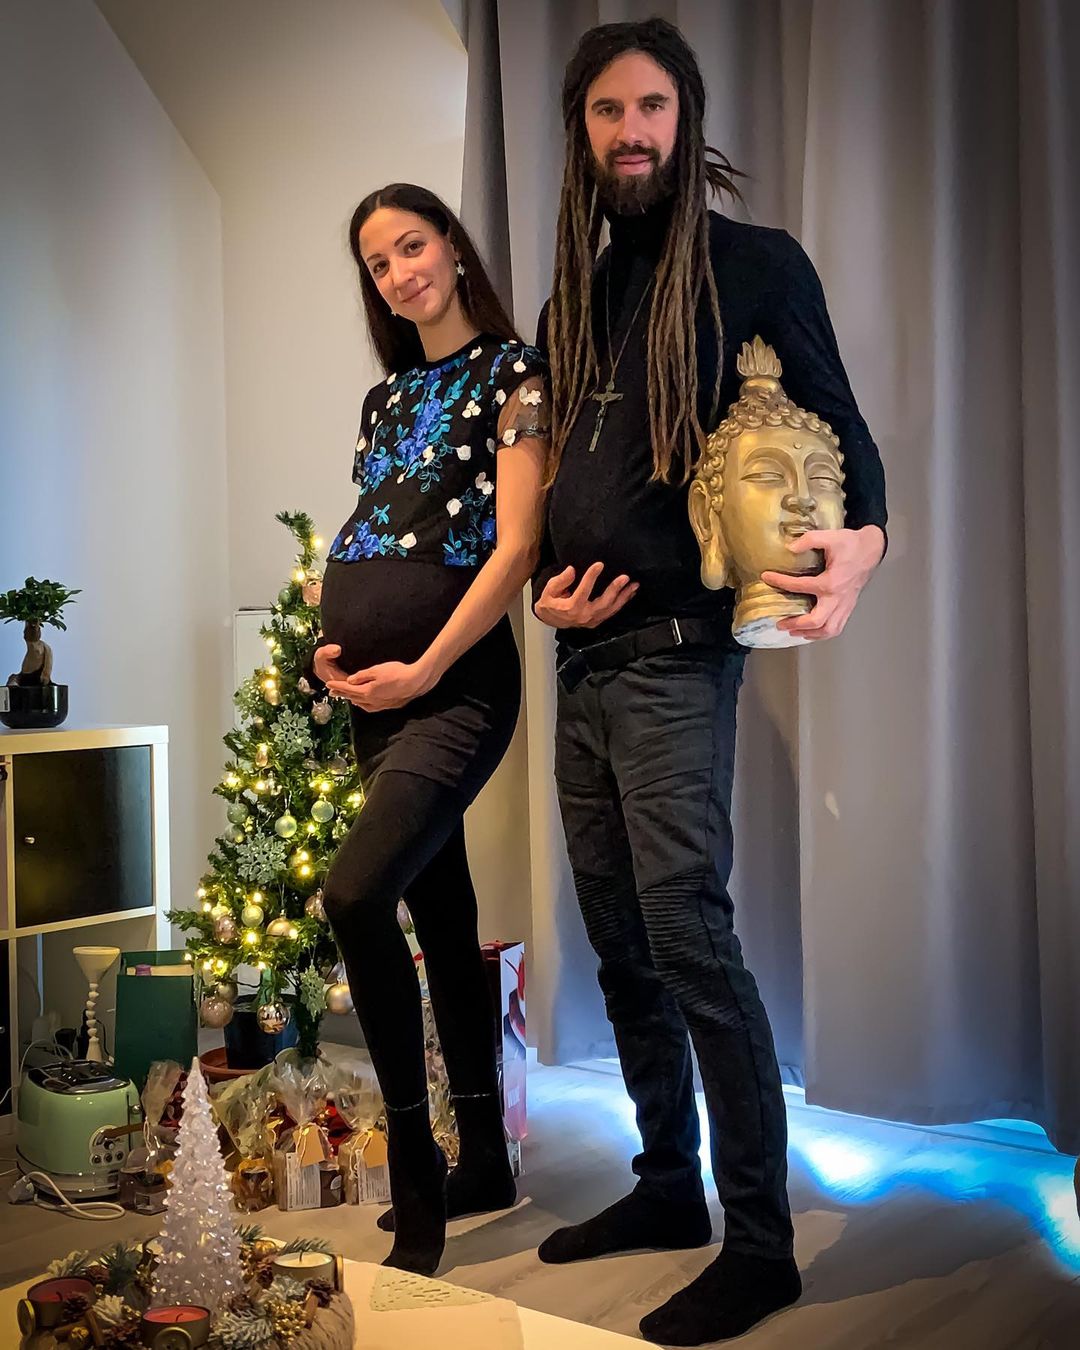 Varga Viktoréknál folytatódik a karácsonyi csoda: már meg is született a baba